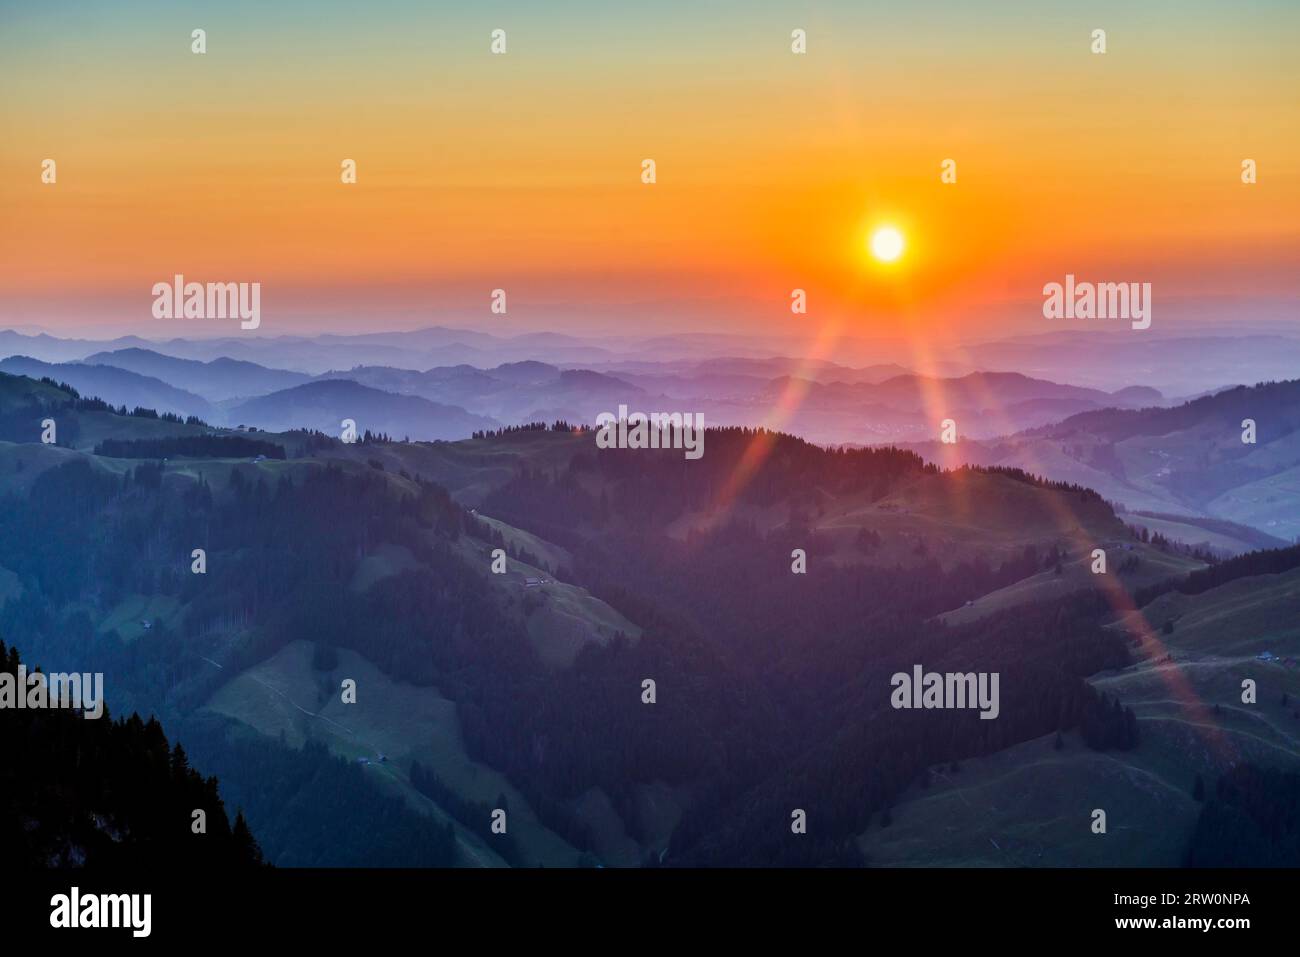 Sunrise, view from Ebenalp, Weissbad, Alpstein, Canton Appenzell Innerrhoden, Switzerland Stock Photo